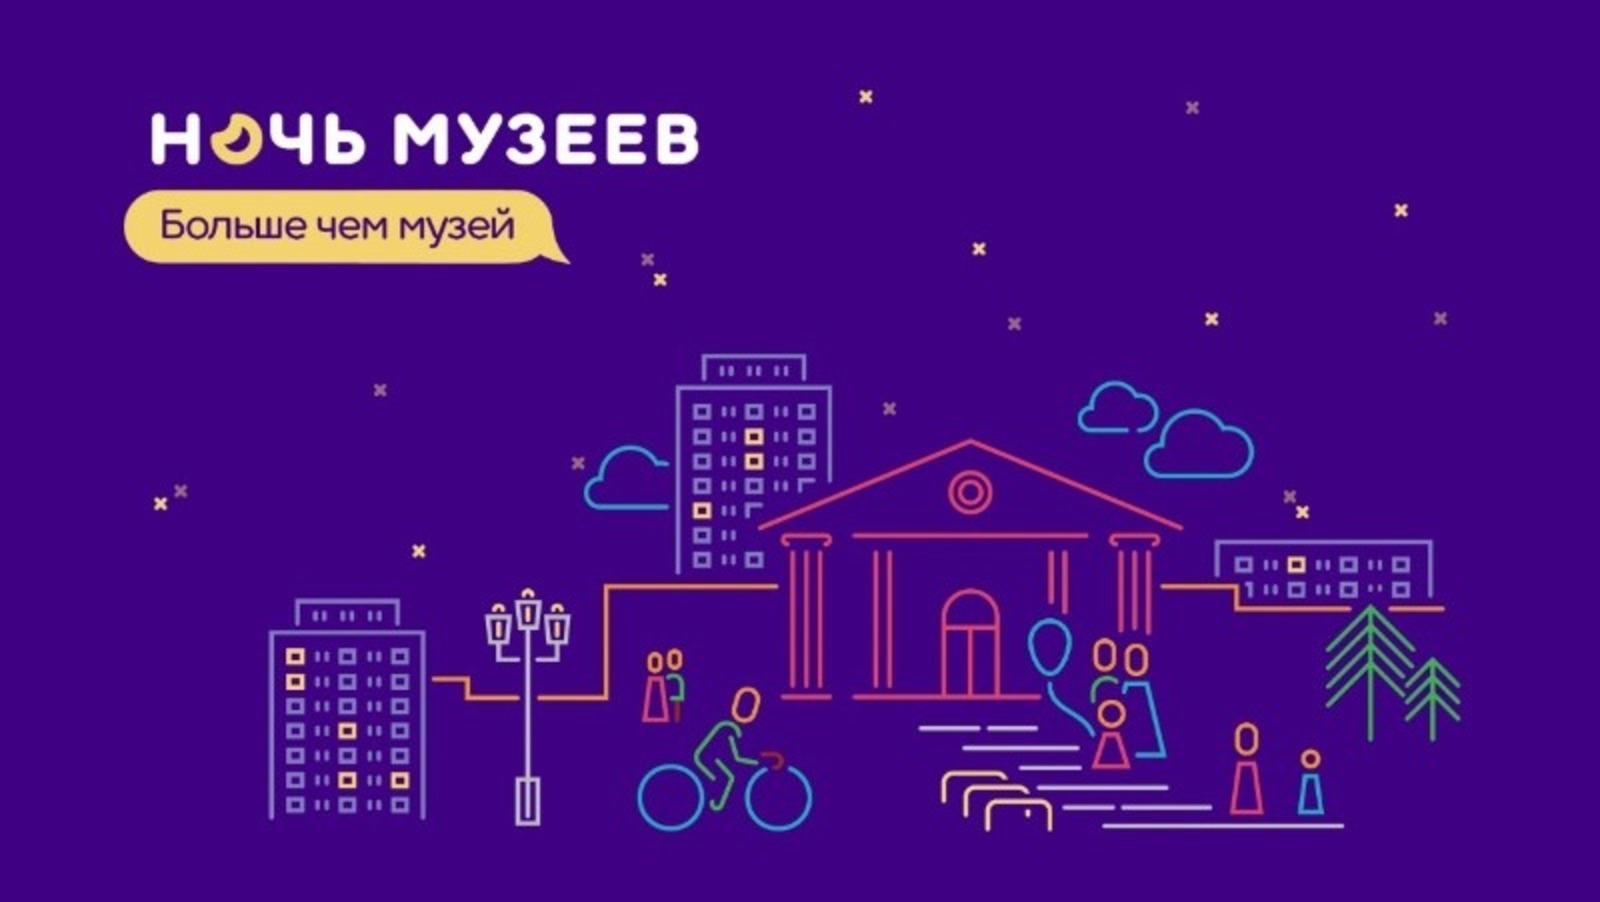 В Башкортостане пройдет акция «Ночь музеев-2022»